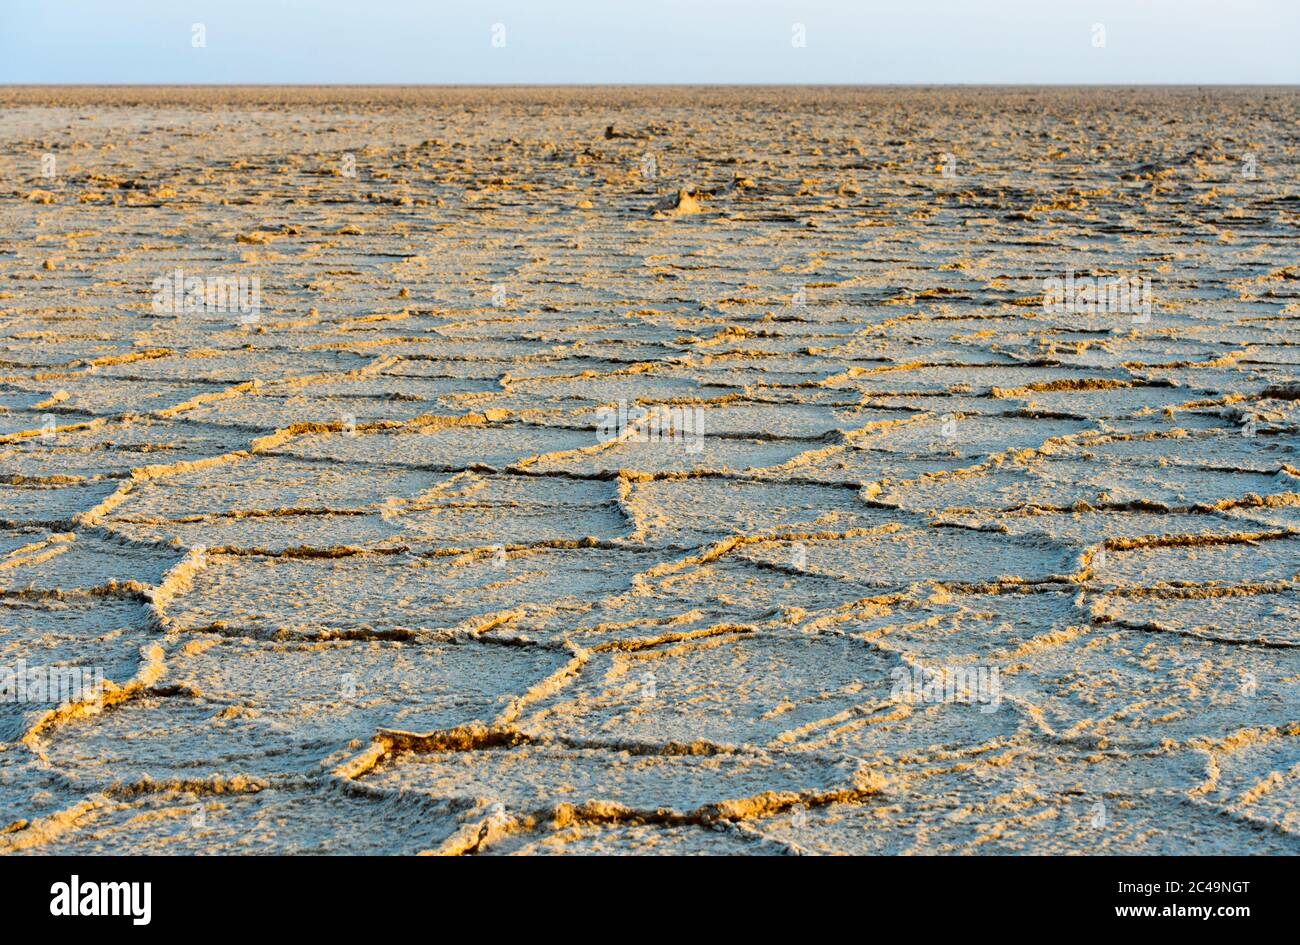 Honeycomb-shaped rock salt deposits on the Assale Salt Lake, Hamadela, Danakil Depression, Afar Triangle, Ethiopia Stock Photo